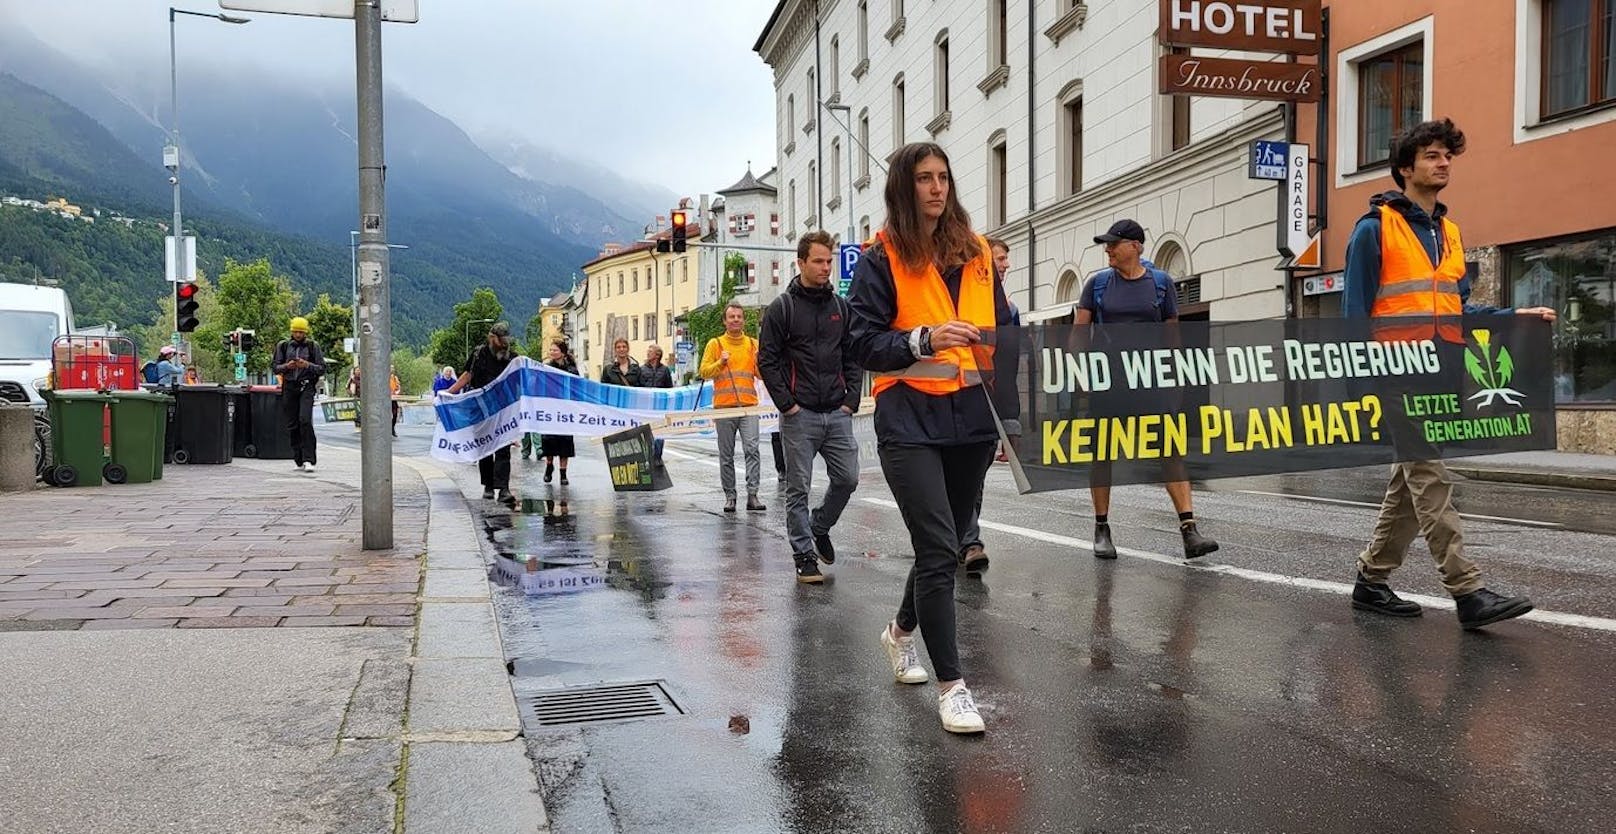 Auch am Montag setzte die "Letzte Generation" ihren Klima-Protest in Österreich fort. Dieses Mal protestierten sie in Innsbruck.